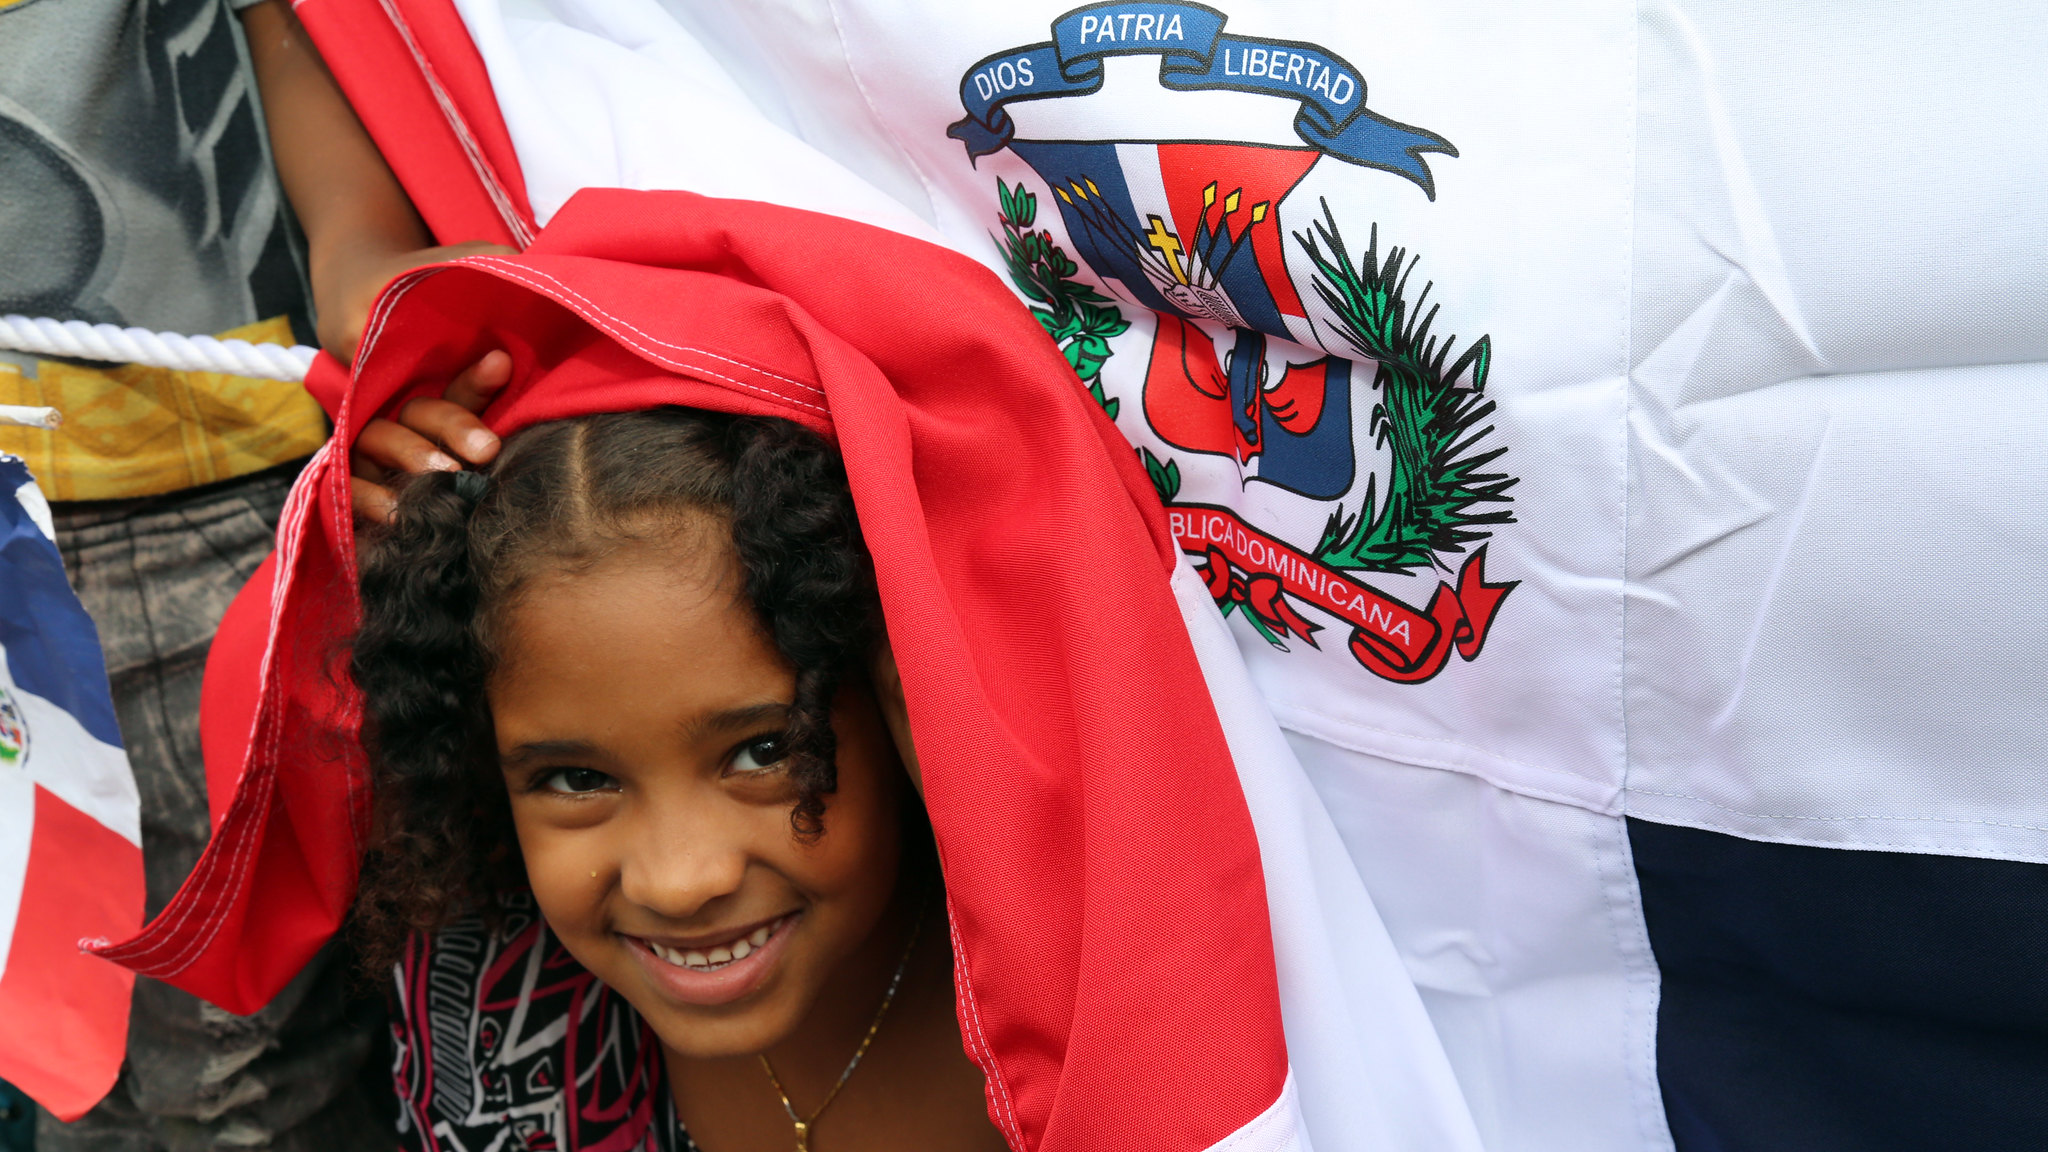 REPÚBLICA DOMINICANA: En aniversario Independencia, Danilo llama al pueblo dominicano a seguir trabajando unidos en pos de principios legados por nuestros héroes